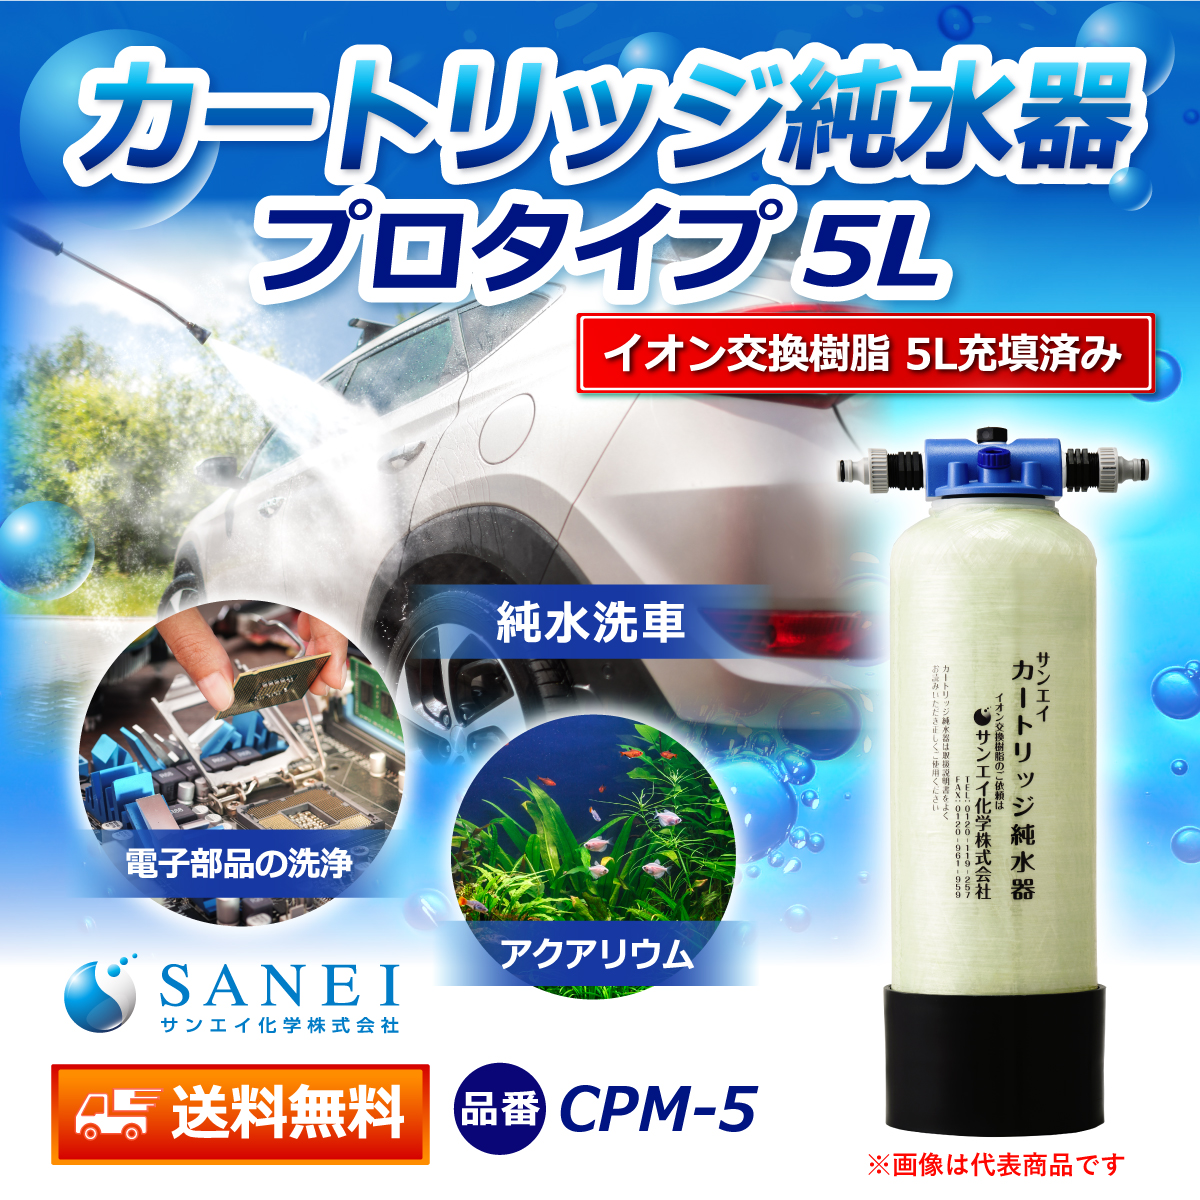 サンエイ化学 カートリッジ純水器 5L プロタイプ CPM-5 イオン交換樹脂 5L入り【純水器 本体単品】